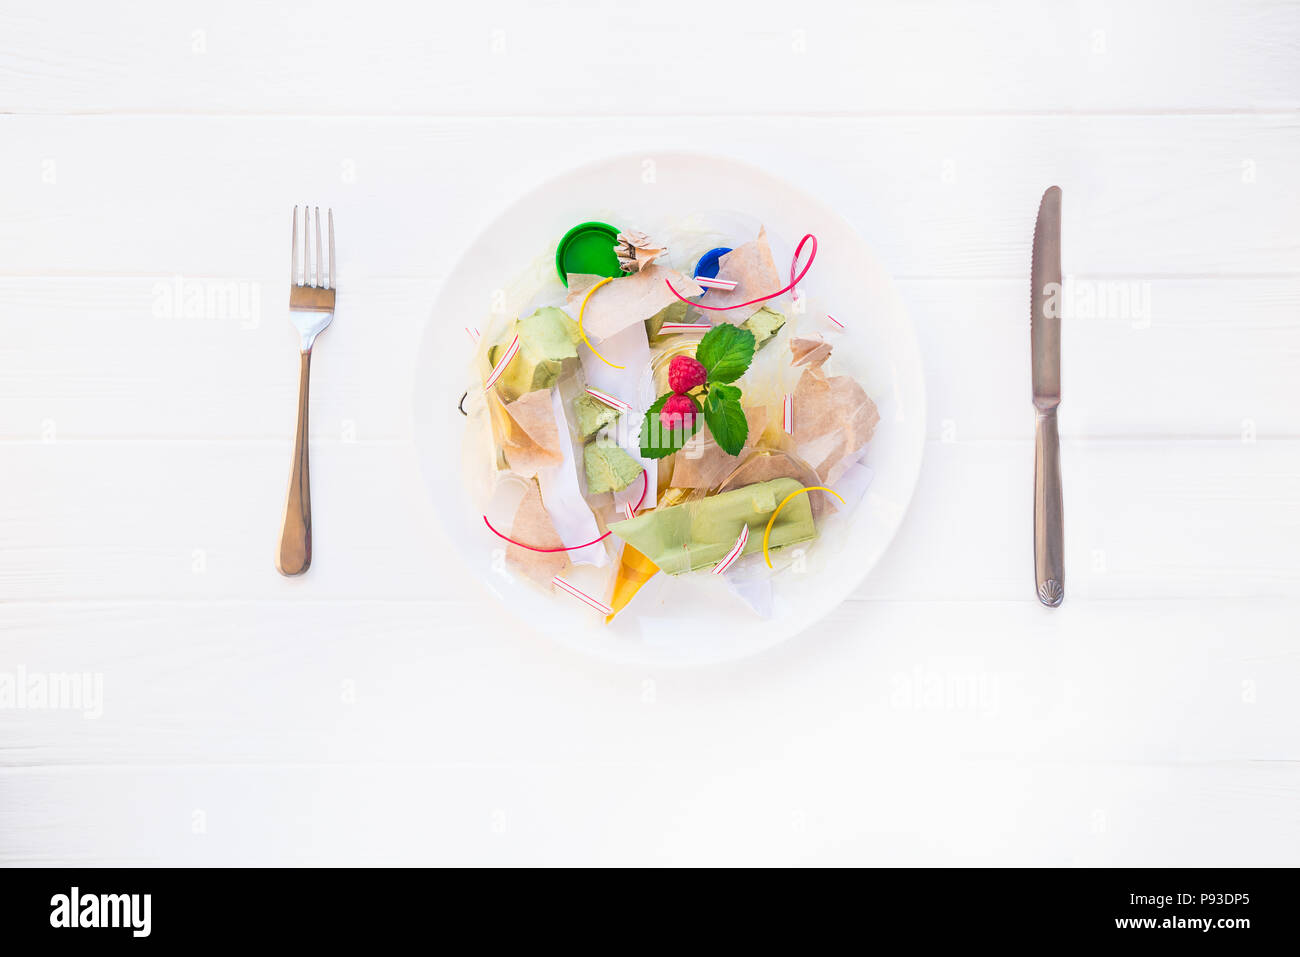 Messer und Gabel Platte mit unreal Salat aus Recycling von Abfällen, synthetische Inhaltsstoffe. Konzept der Künstlichen, Essen. Gvo, E-Nummern Chemikalien in der Nahrung Stockfoto